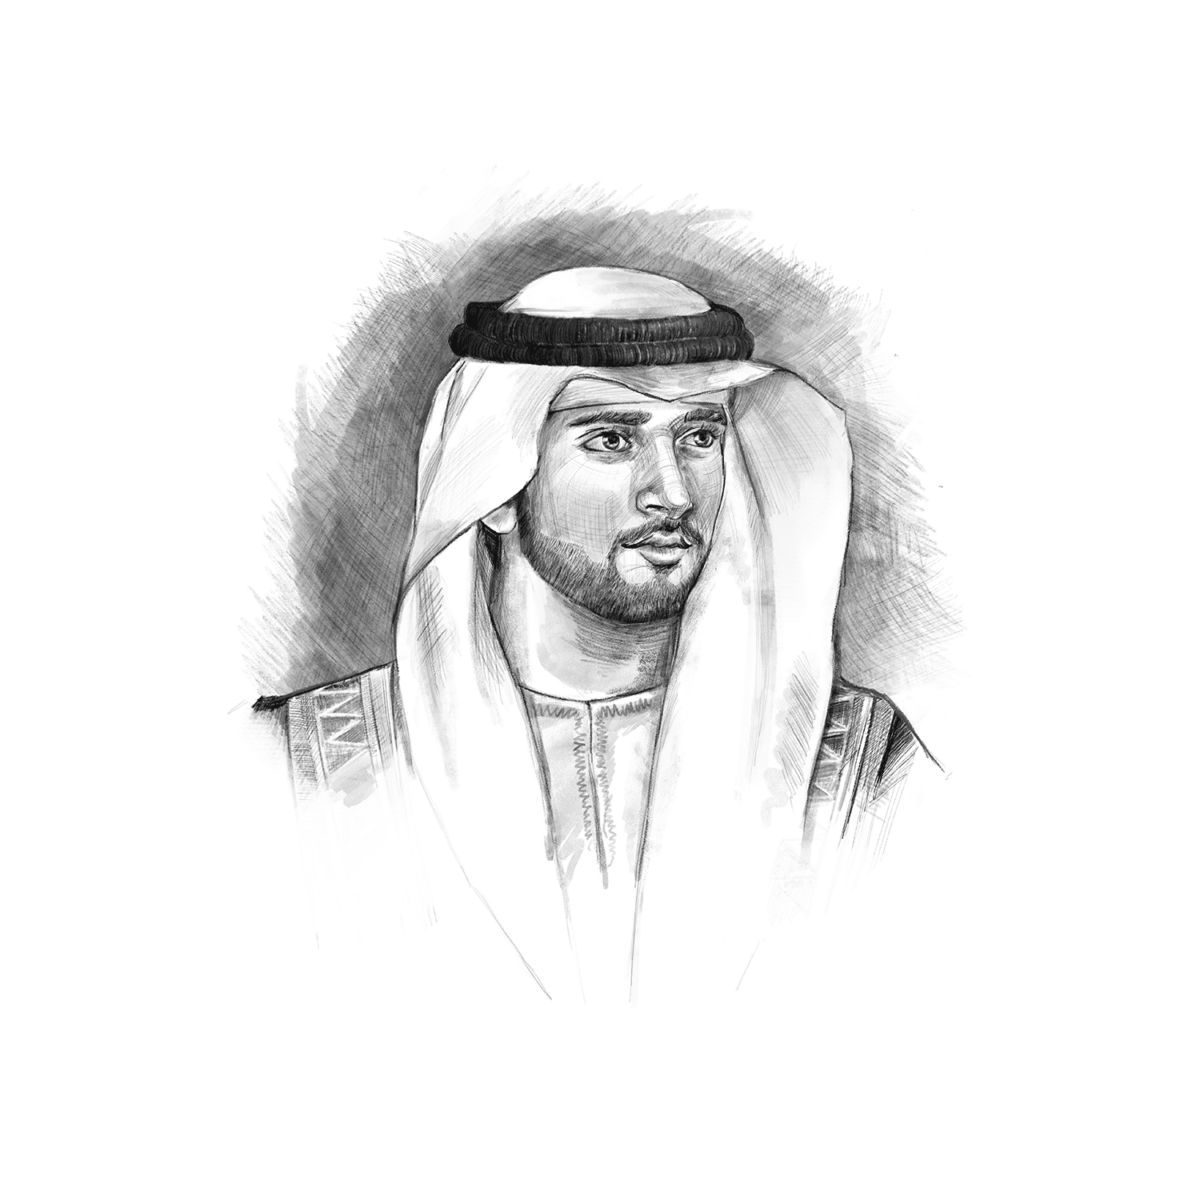 His Highness Sheikh Hamdan bin Mohammed Al Maktoum